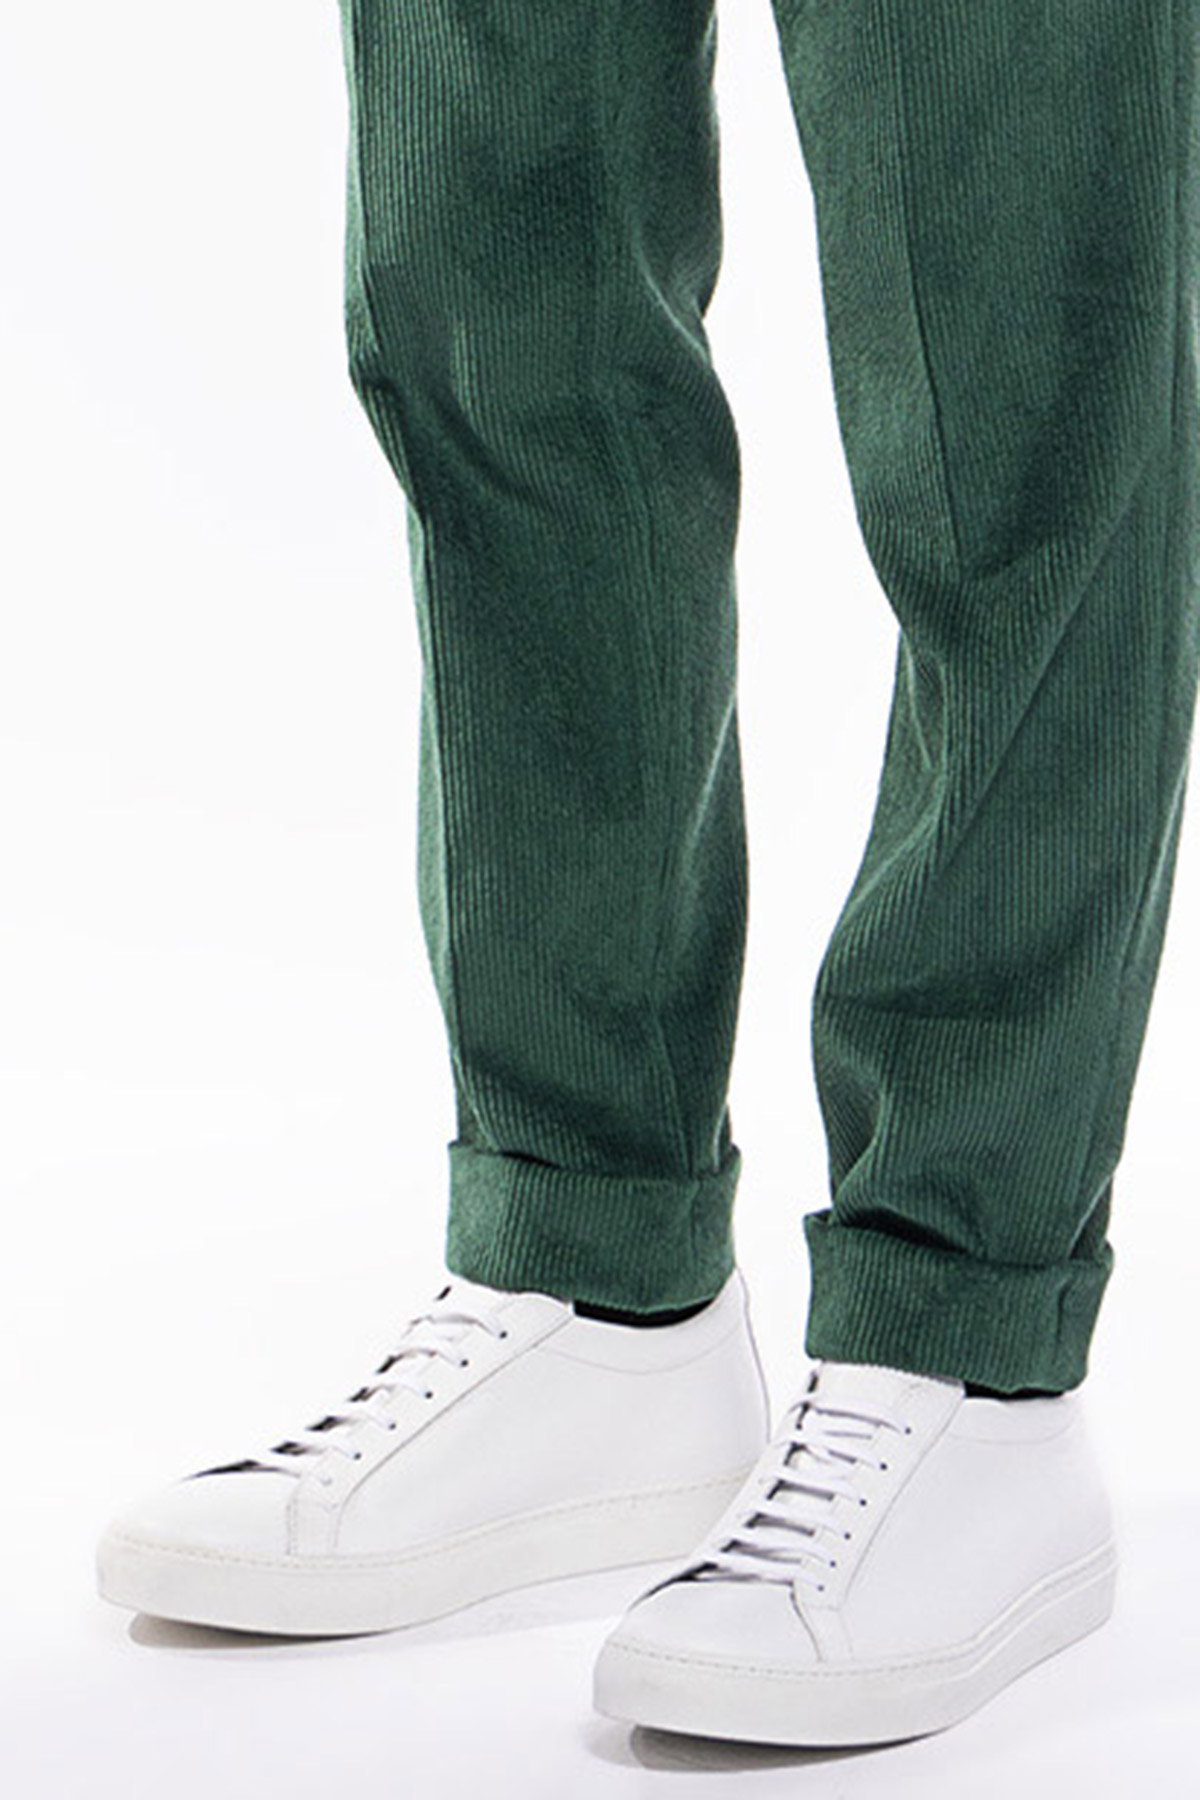 Pantalone uomo verde Bottiglia vita alta biforcato doppia pinces in velluto a costine strette